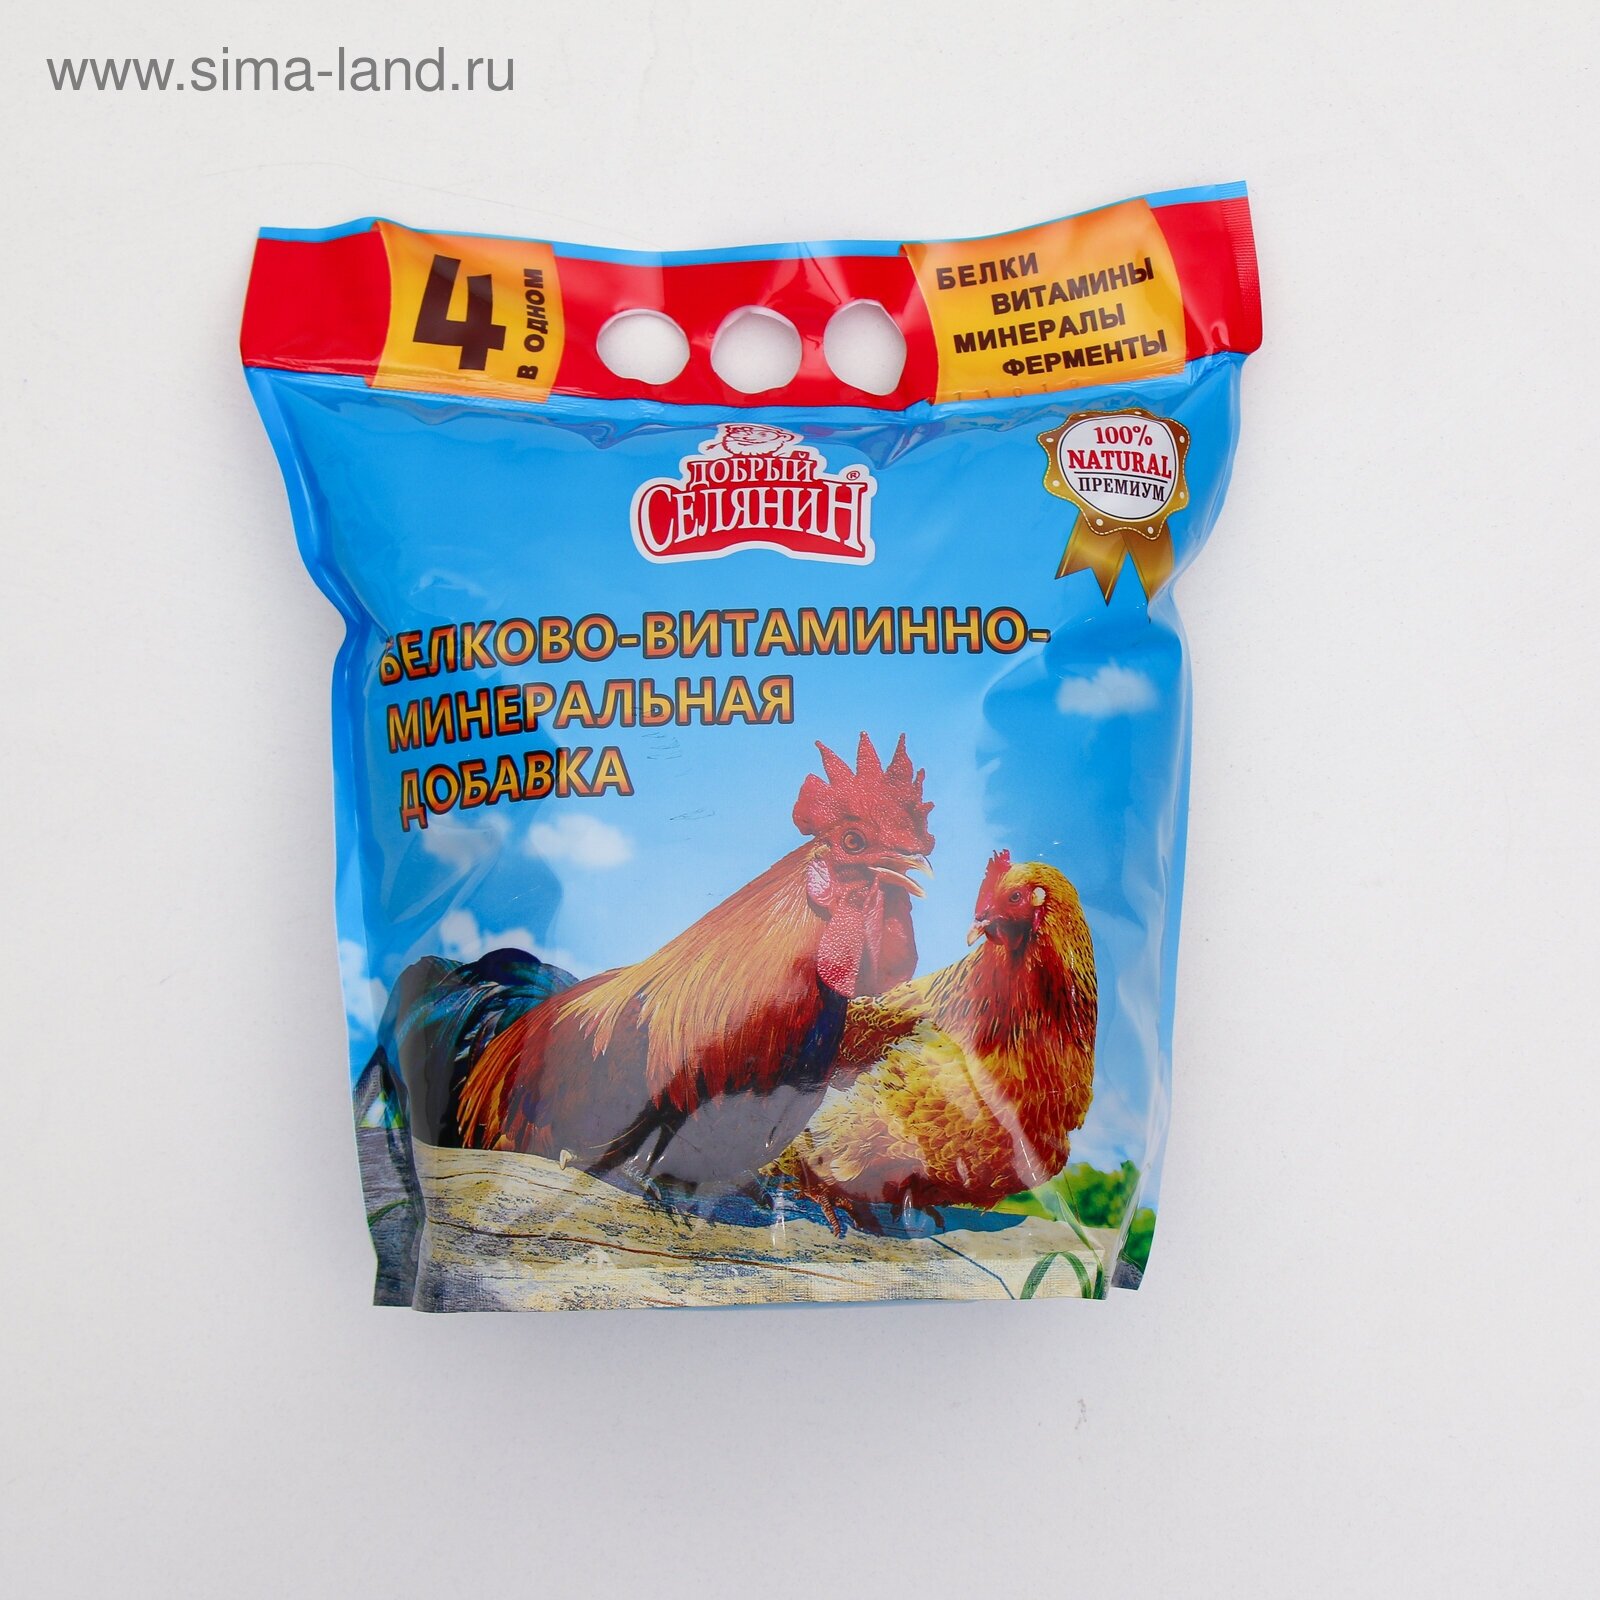 Добавка белково-витаминно-минеральная с ферментами для домашней птицы 4 в 1 премиум Добрый Селянин (1,7 кг)